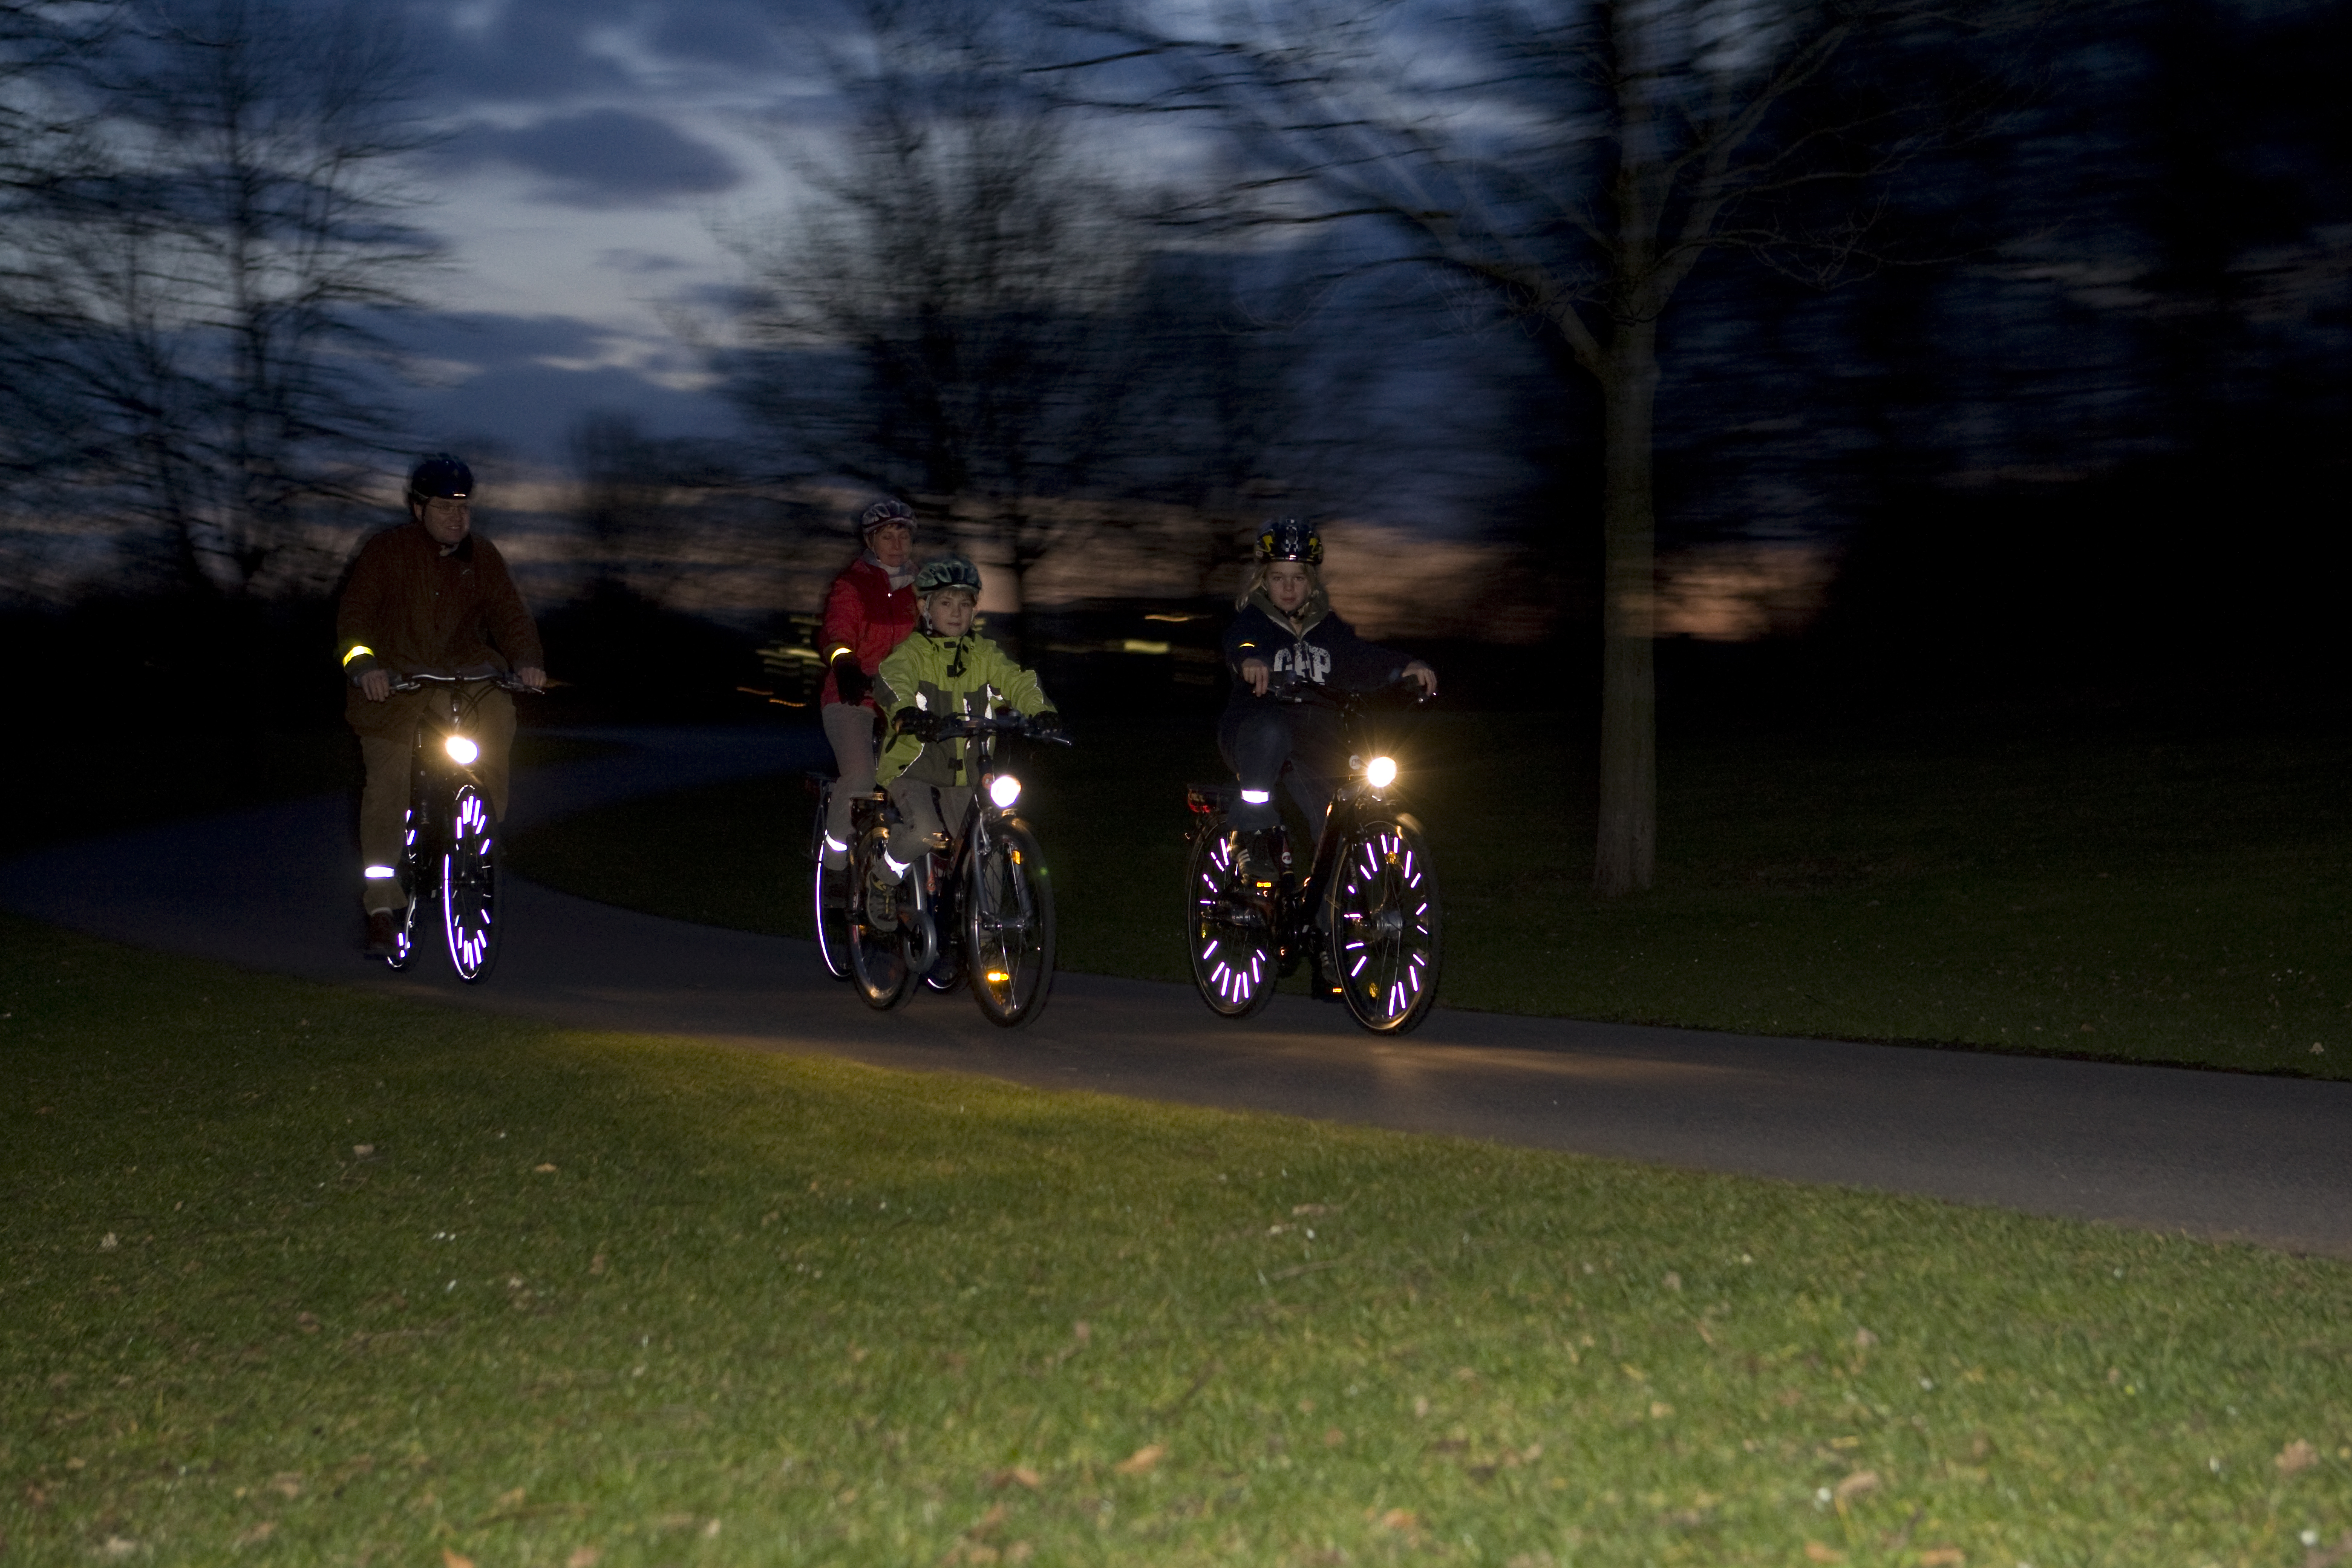 Reflektoren am Fahrrad für bessere Sichtbarkeit bei Dunkelheit